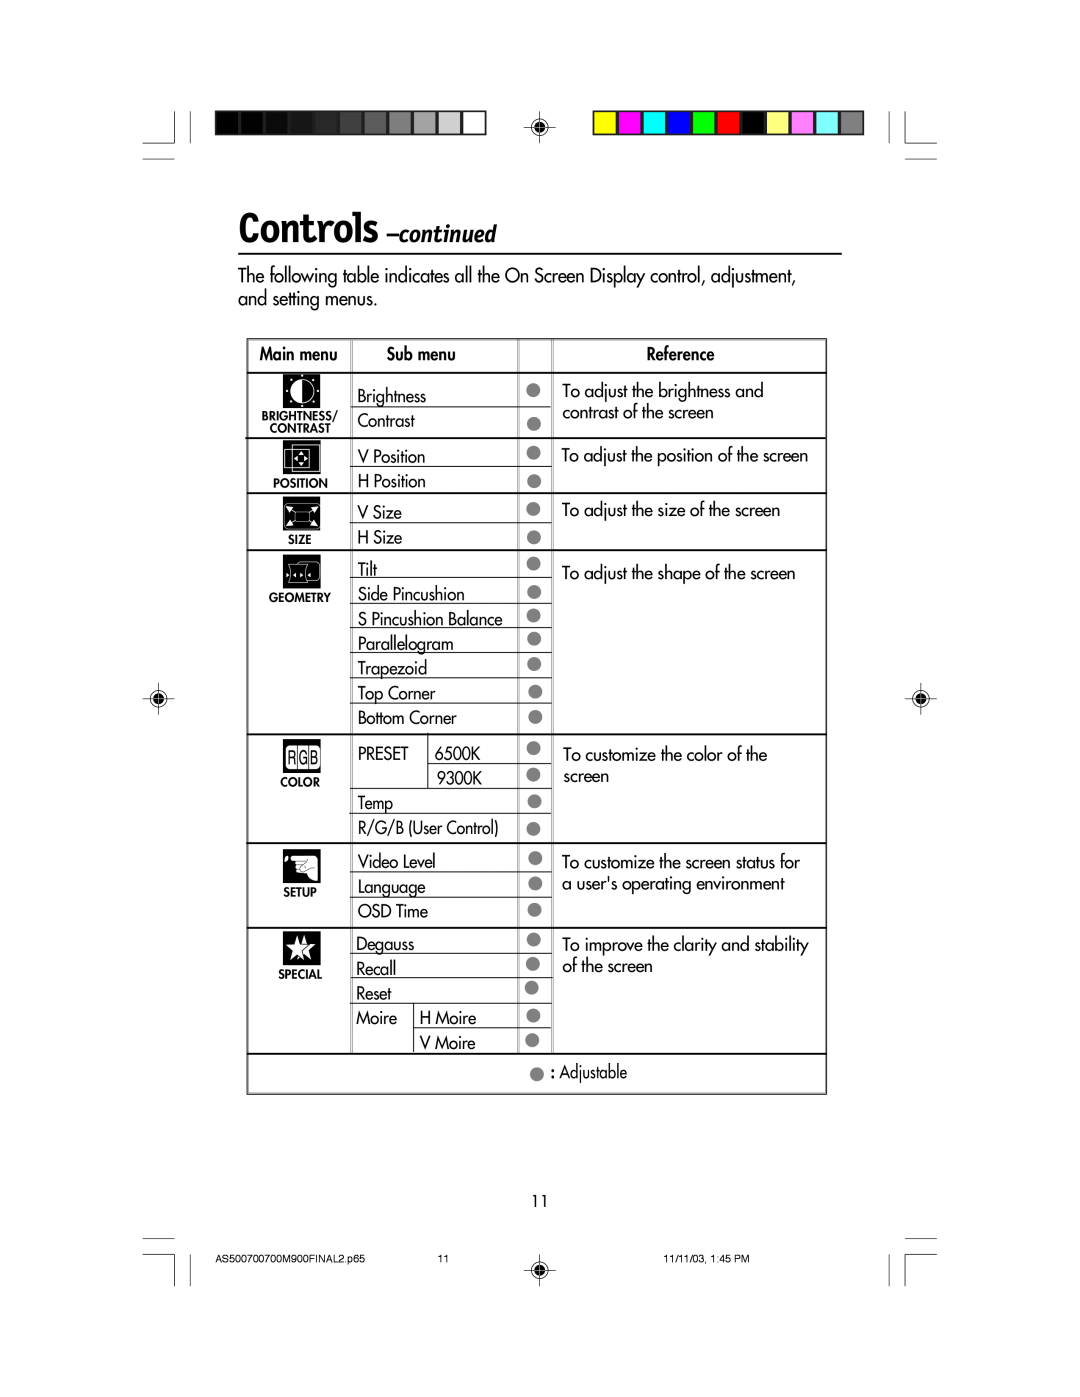 NEC 500, 700, 700M, 900 manual Controls -continued, Main menu 